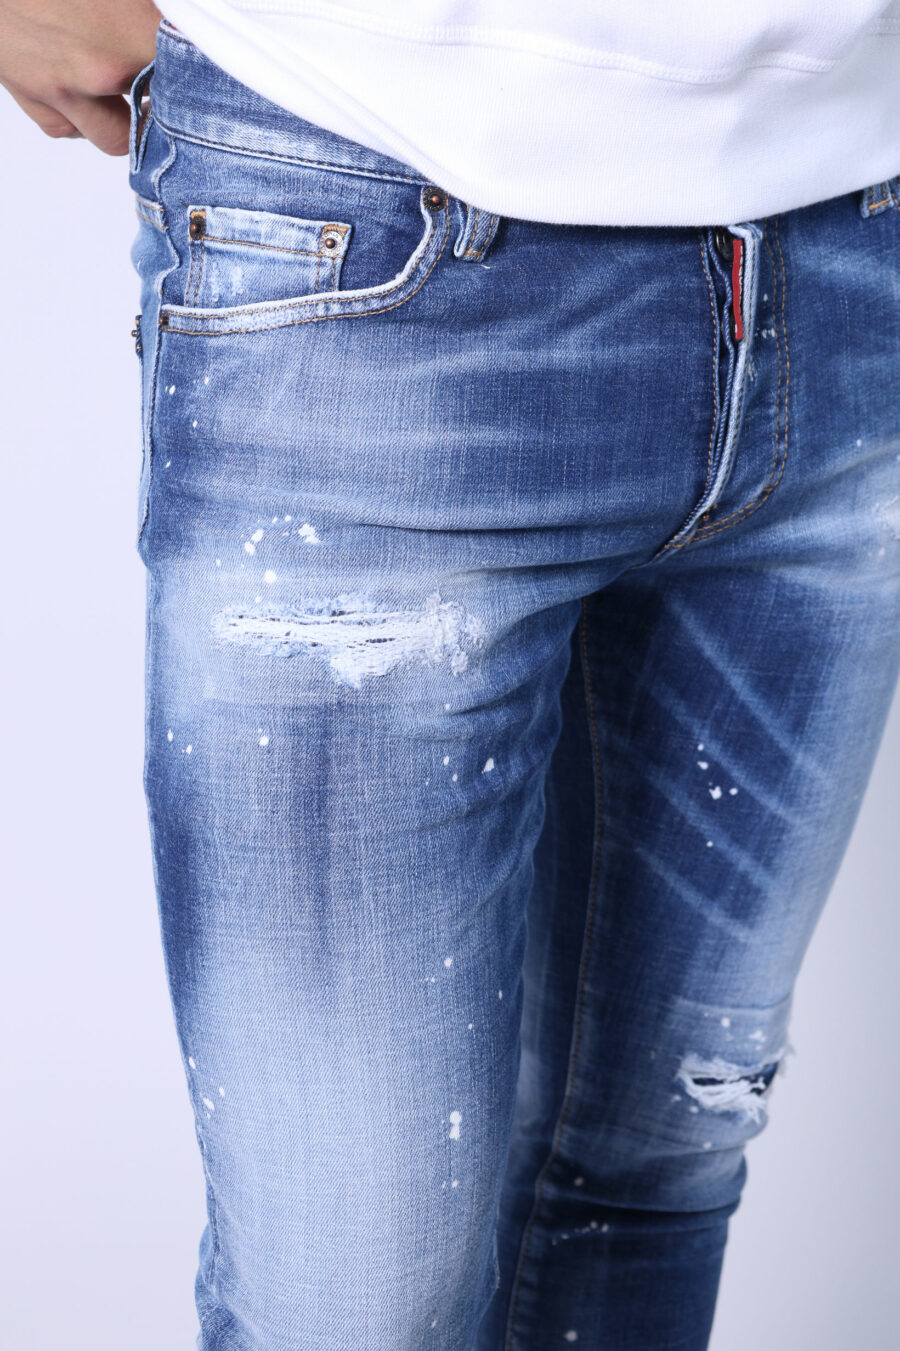 Pantalón vaquero "skater jean" azul claro desgastado y rotos - Untitled Catalog 05506